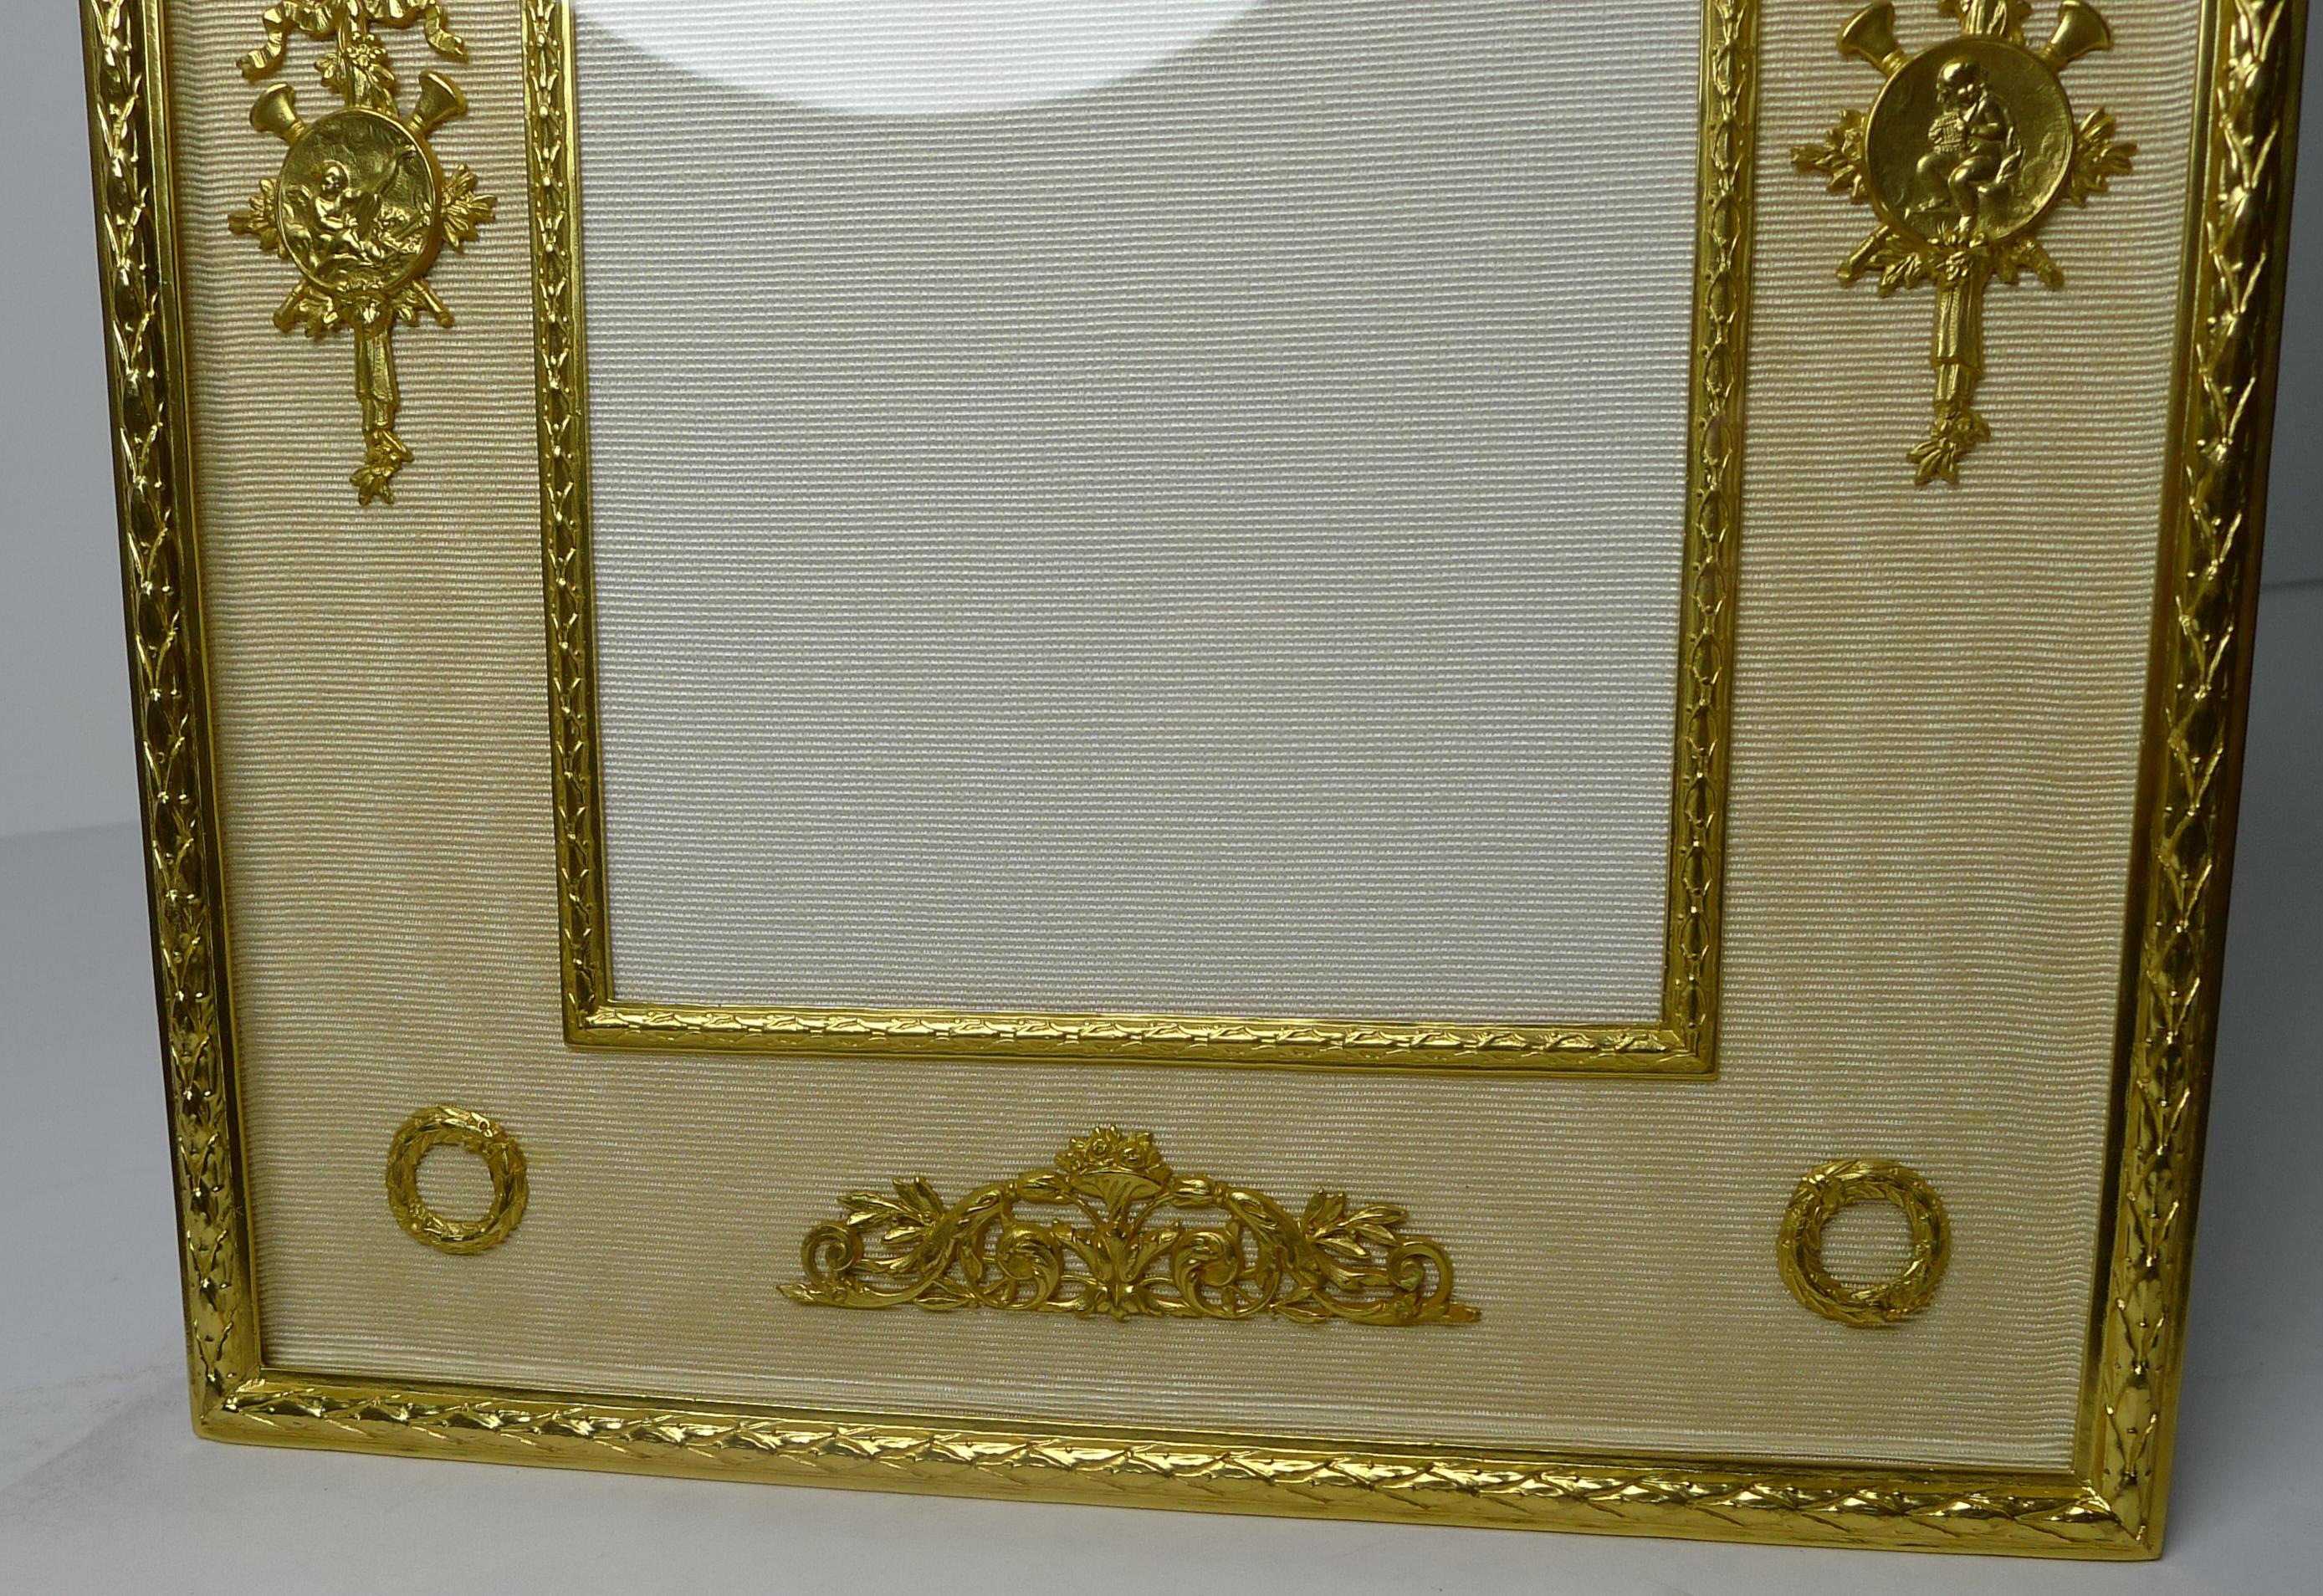 Un superbe cadre français ancien, entièrement restauré pour retrouver sa splendeur d'antan, datant de c.1900 / 1910.

Derrière le verre, le dos est recouvert d'un taffetas de soie crème avec une ouverture centrale pour la photographie qui mesure 5